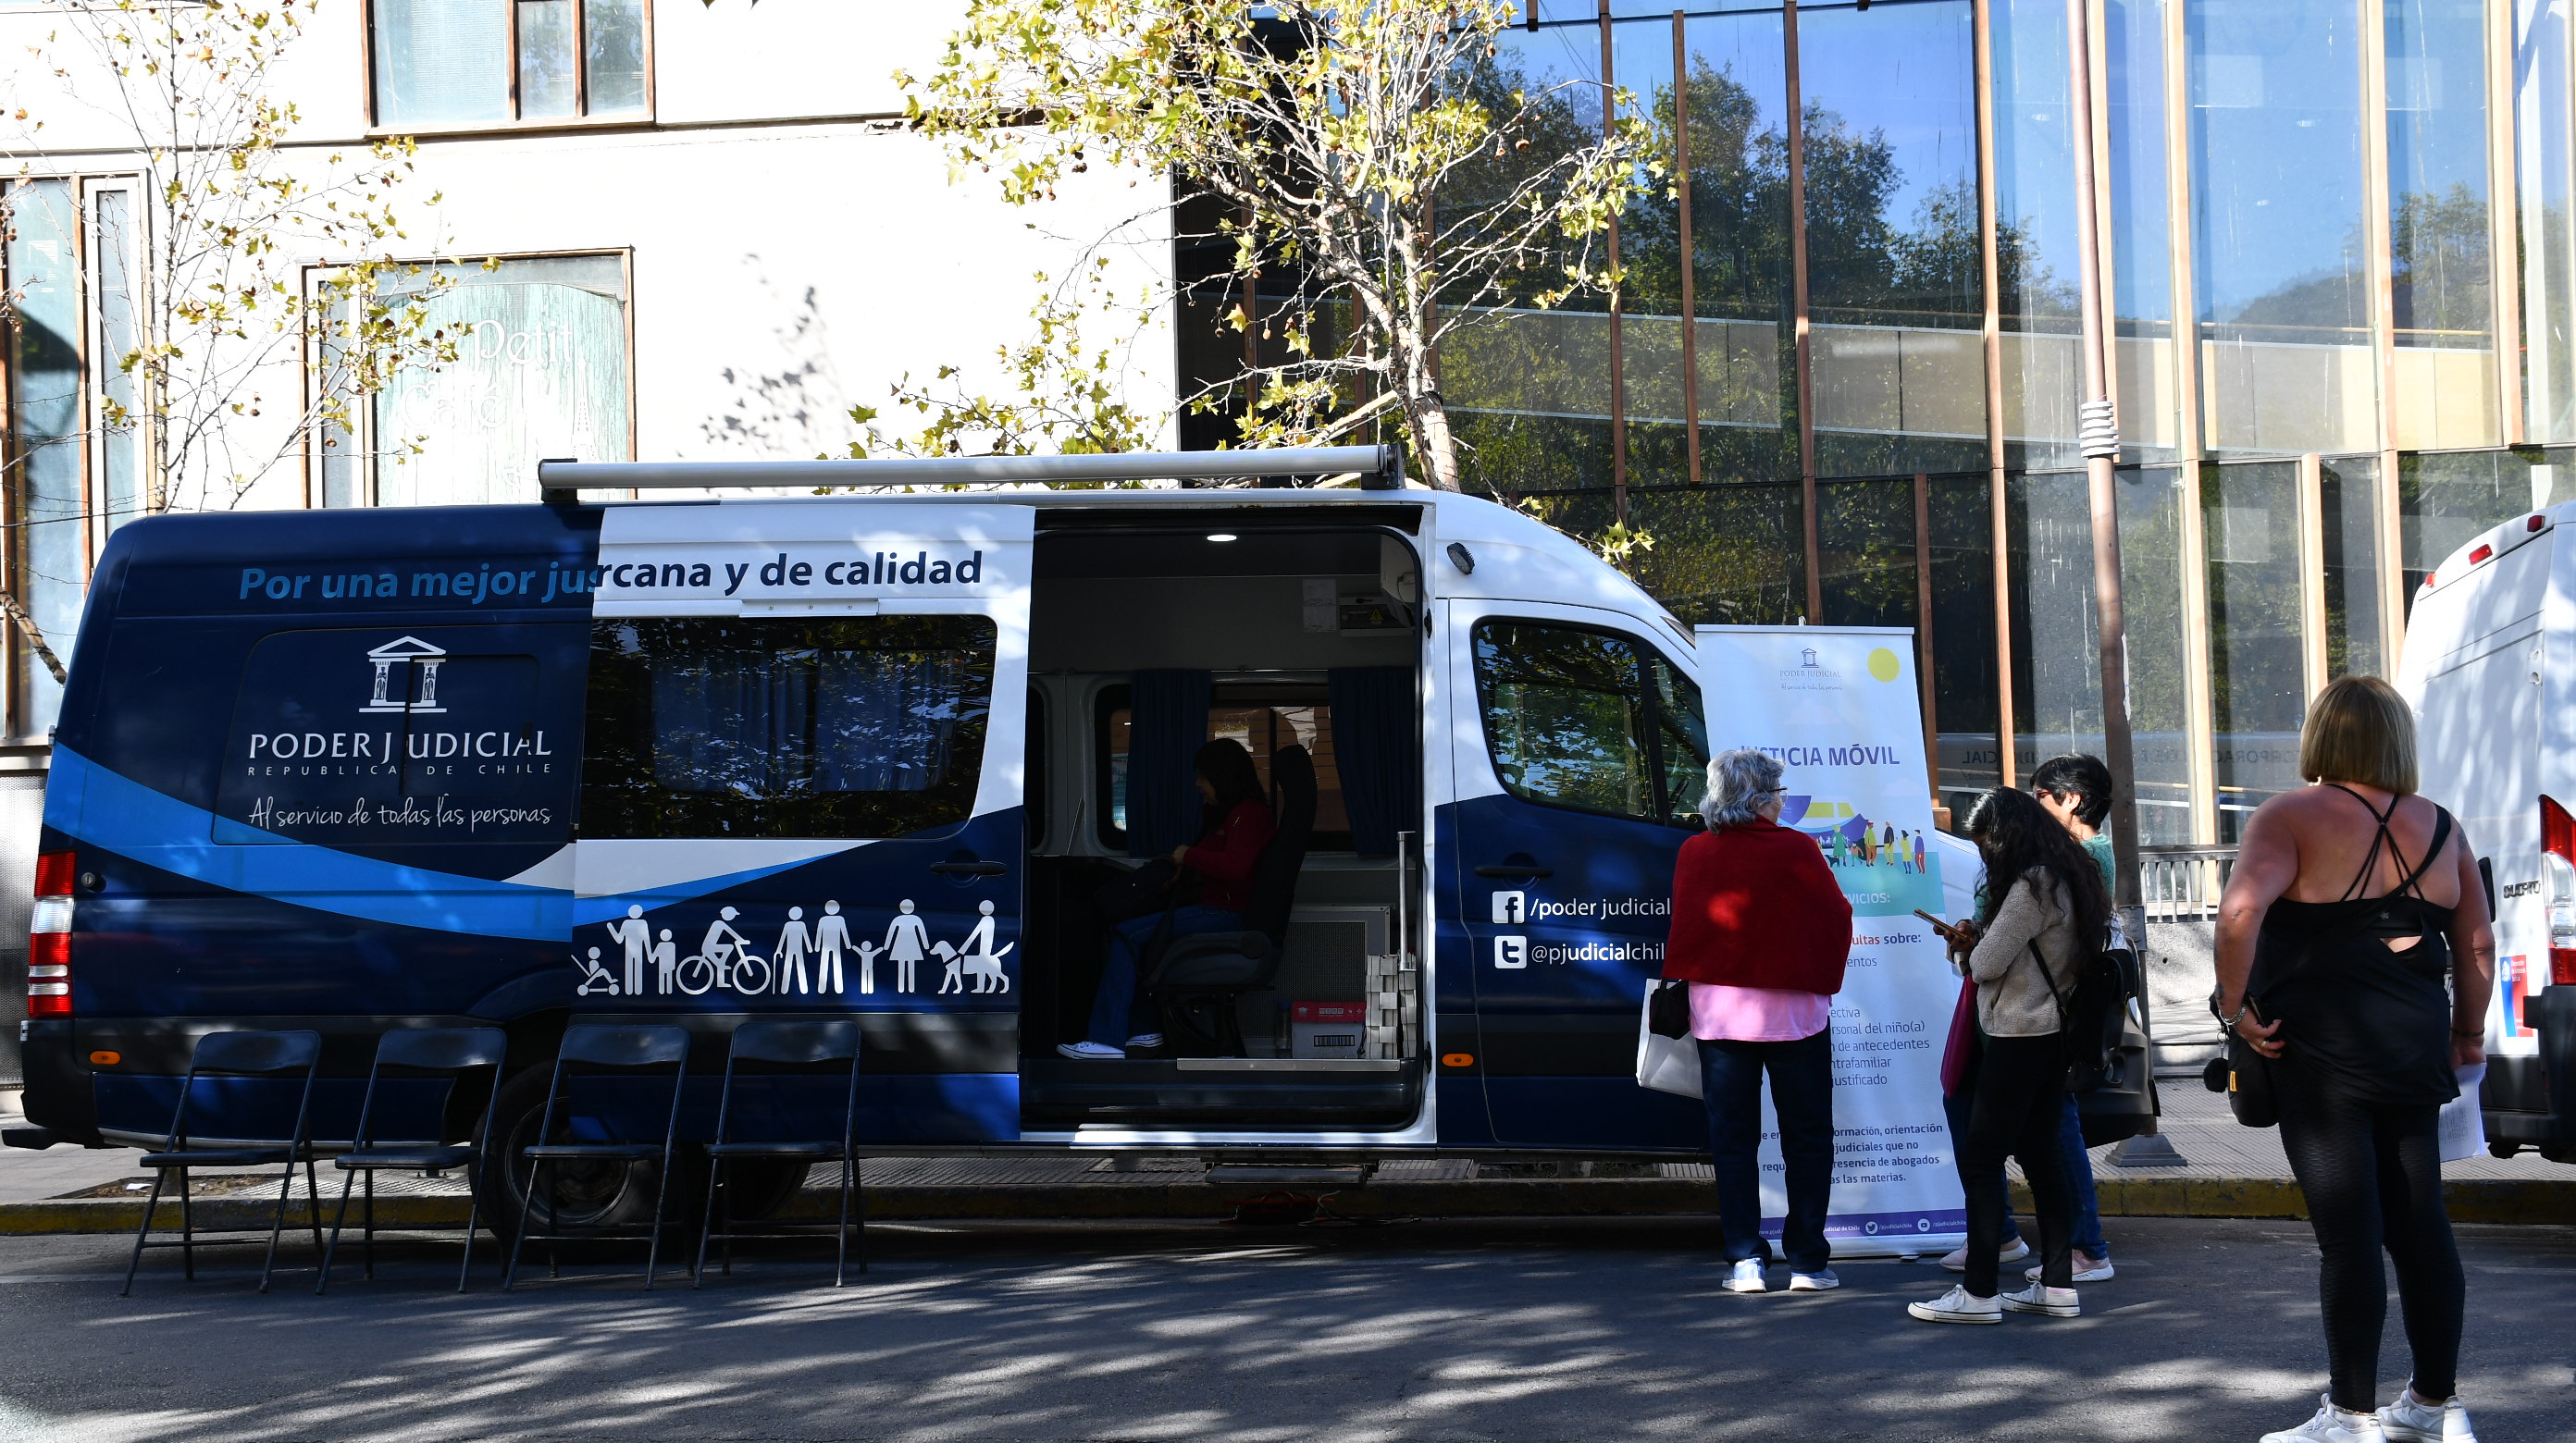 Bus de la Justicia atiende en la comuna de Salamanca en el marco del Mes de la Mujer